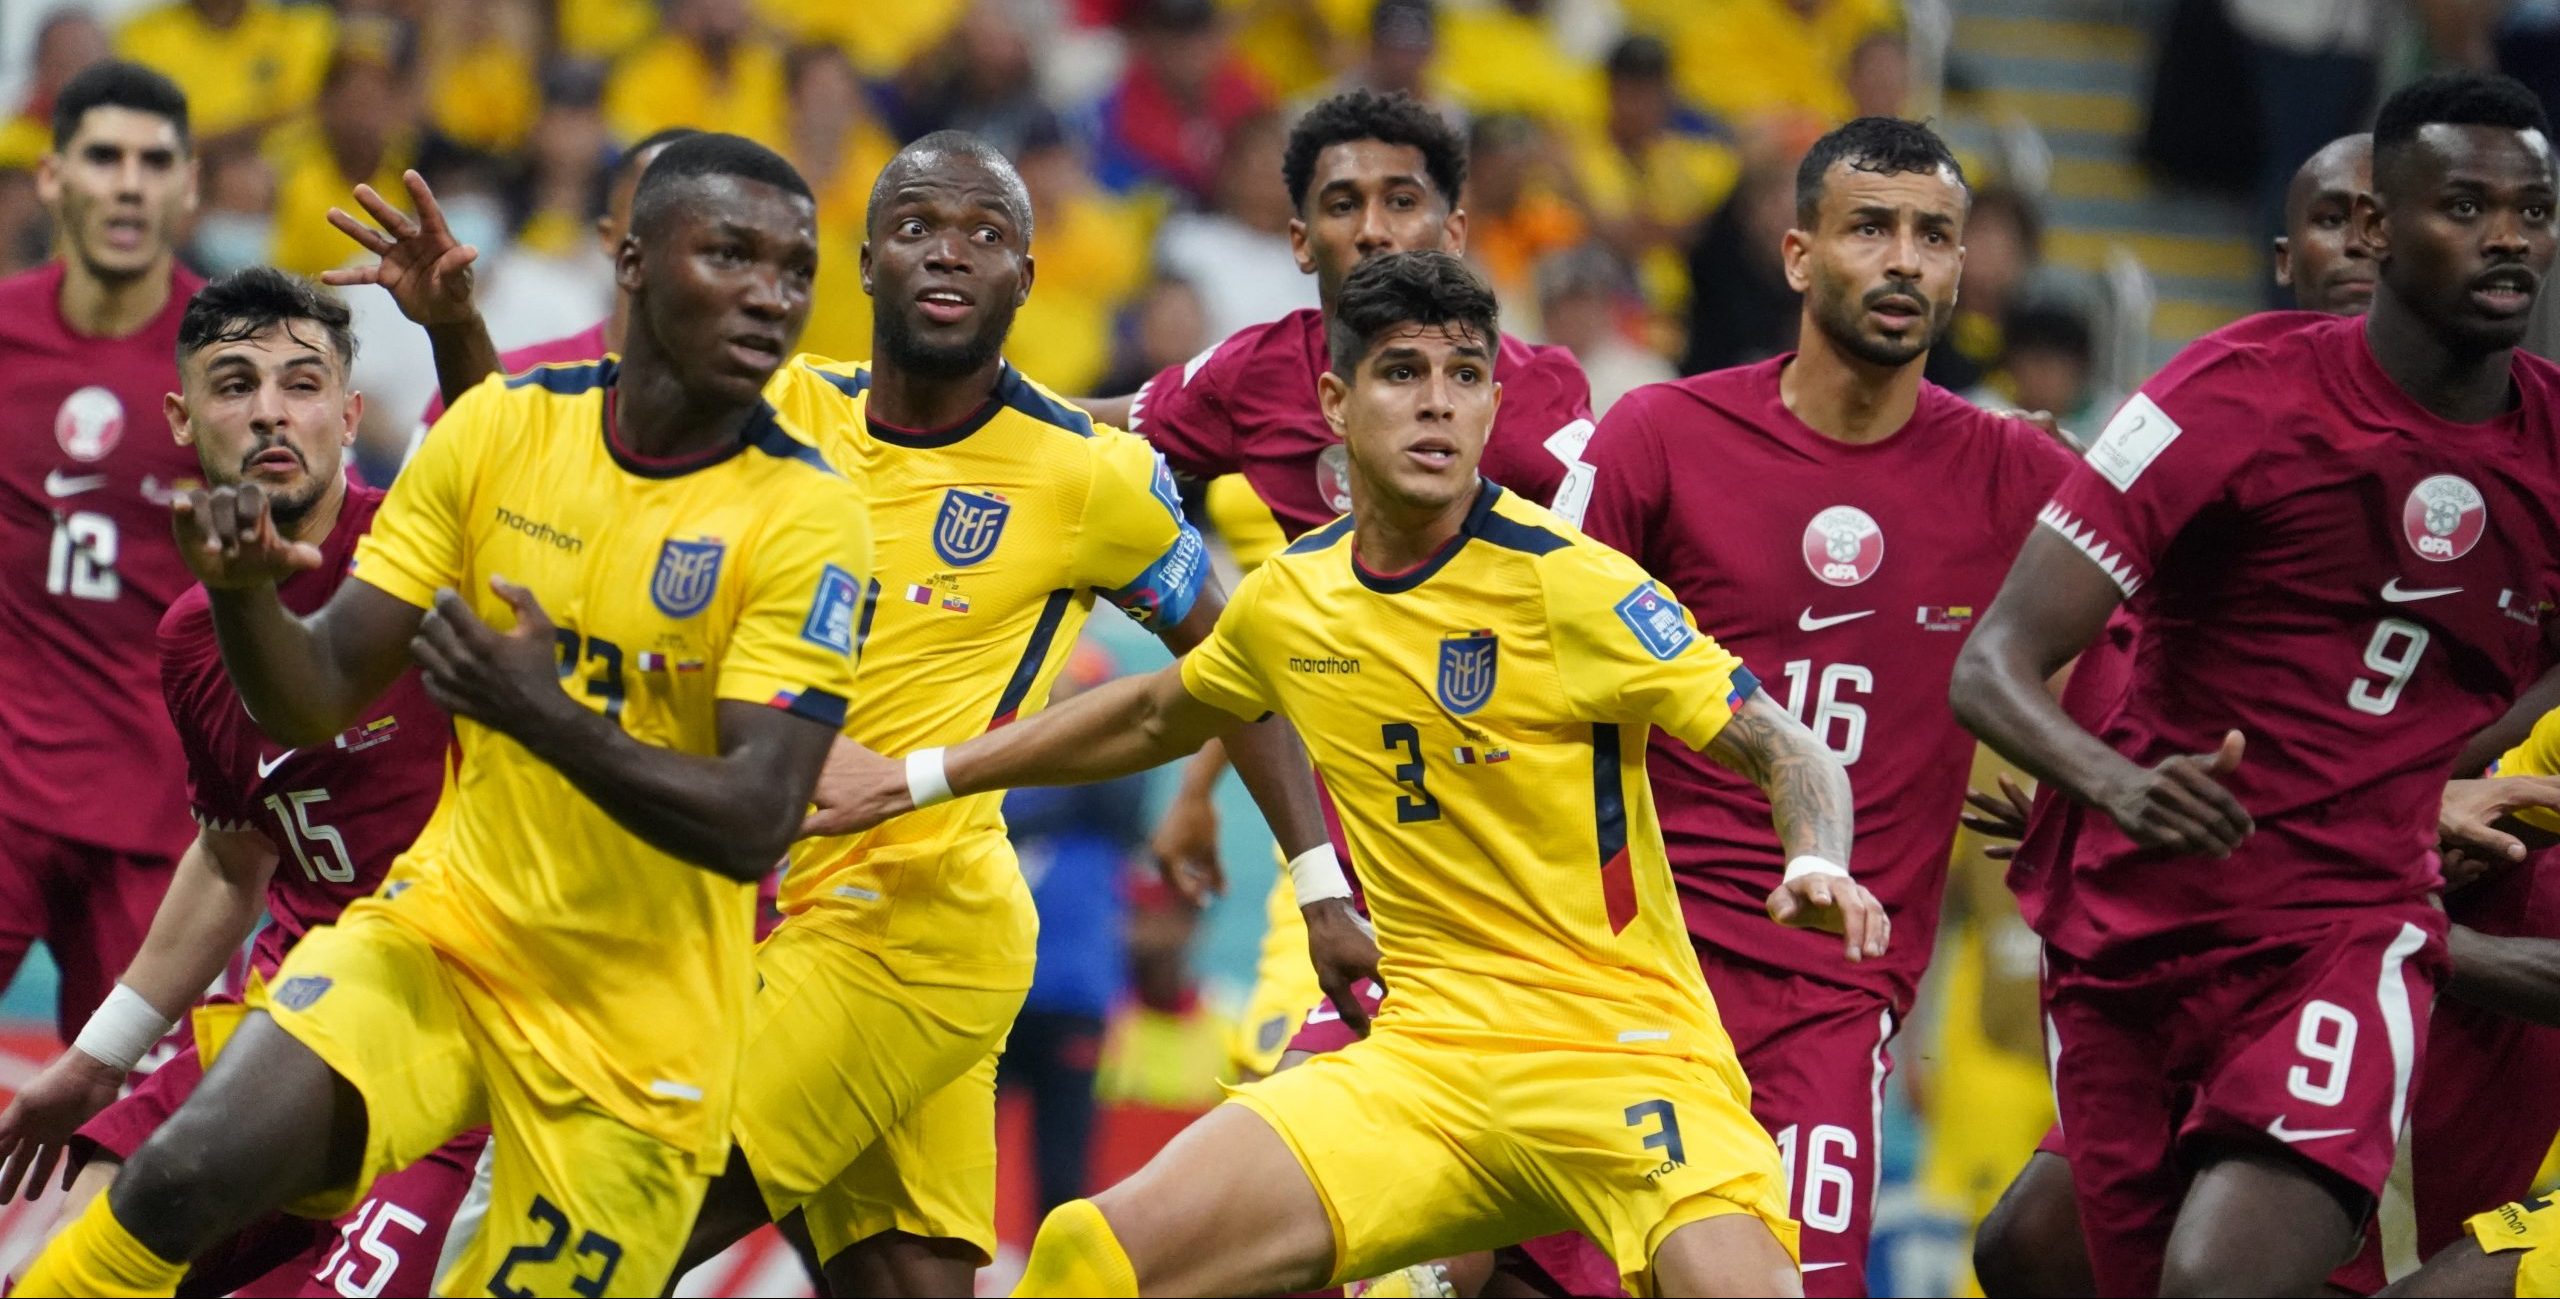 بهذه النتيجة يحصد المنتخب الإكوادوري أول ثلاث نقاط في المجموعة (قنا)